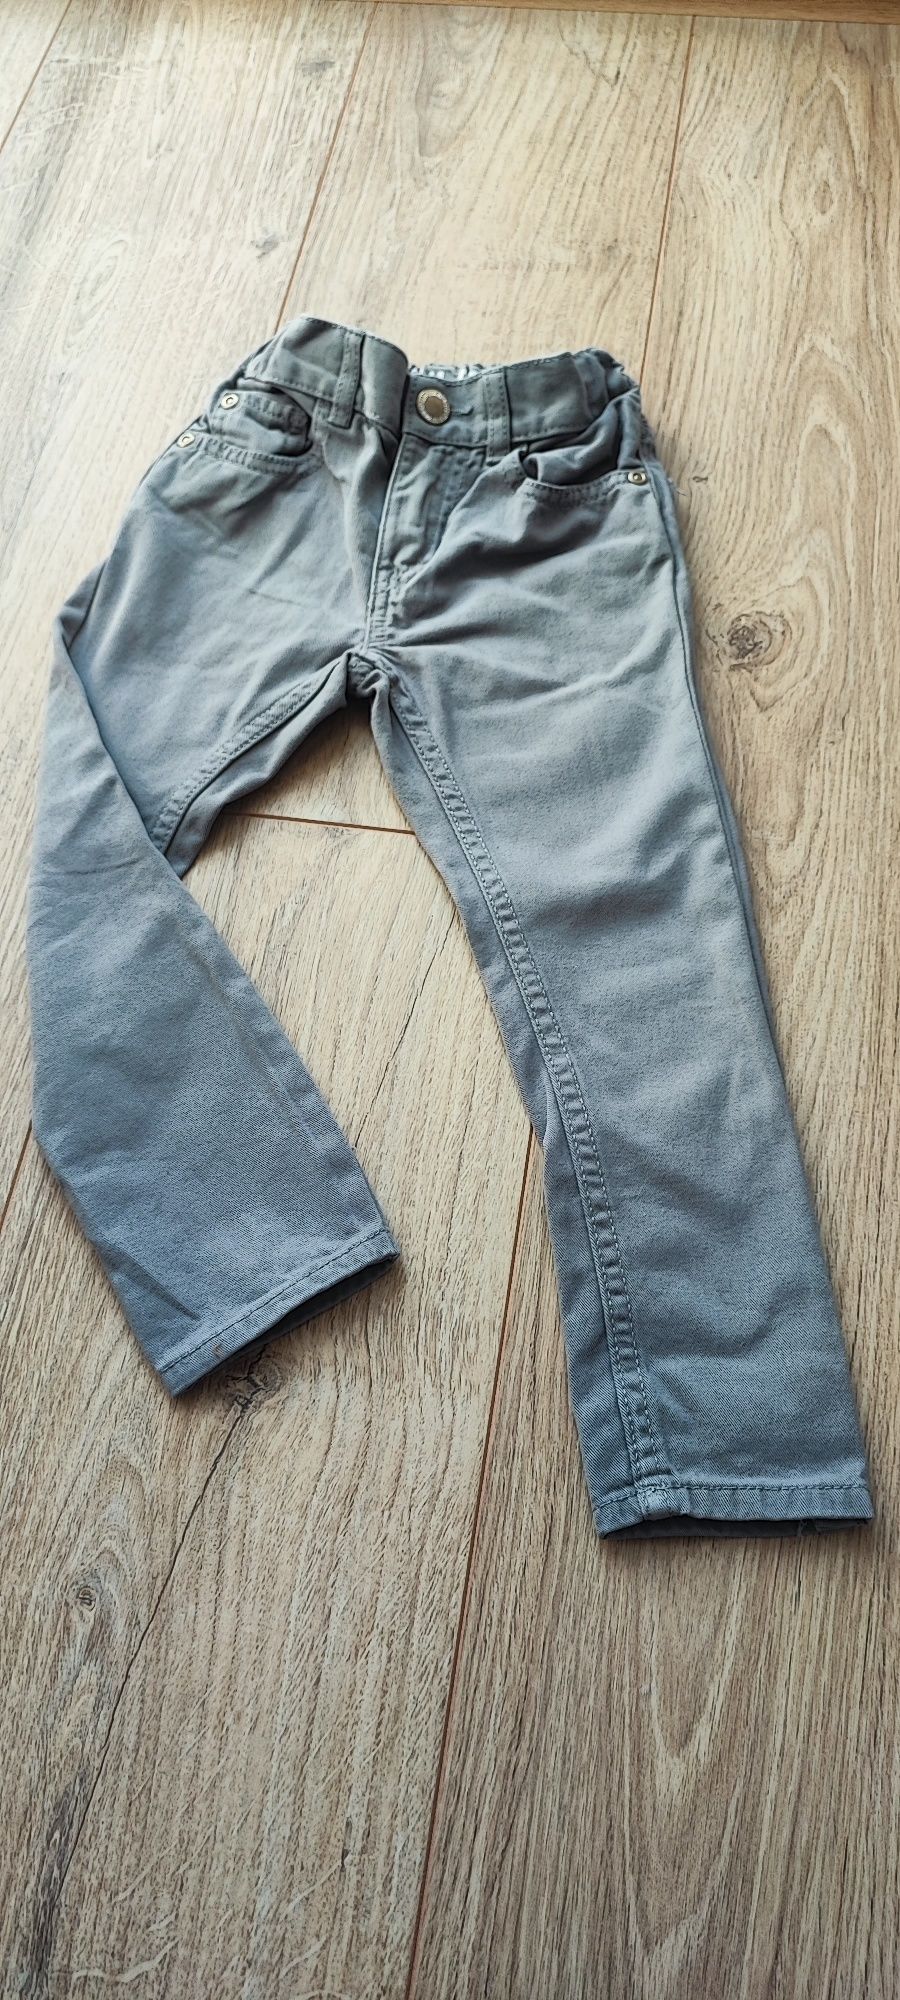 Spodnie jeans H&m roz 98 szczupłe